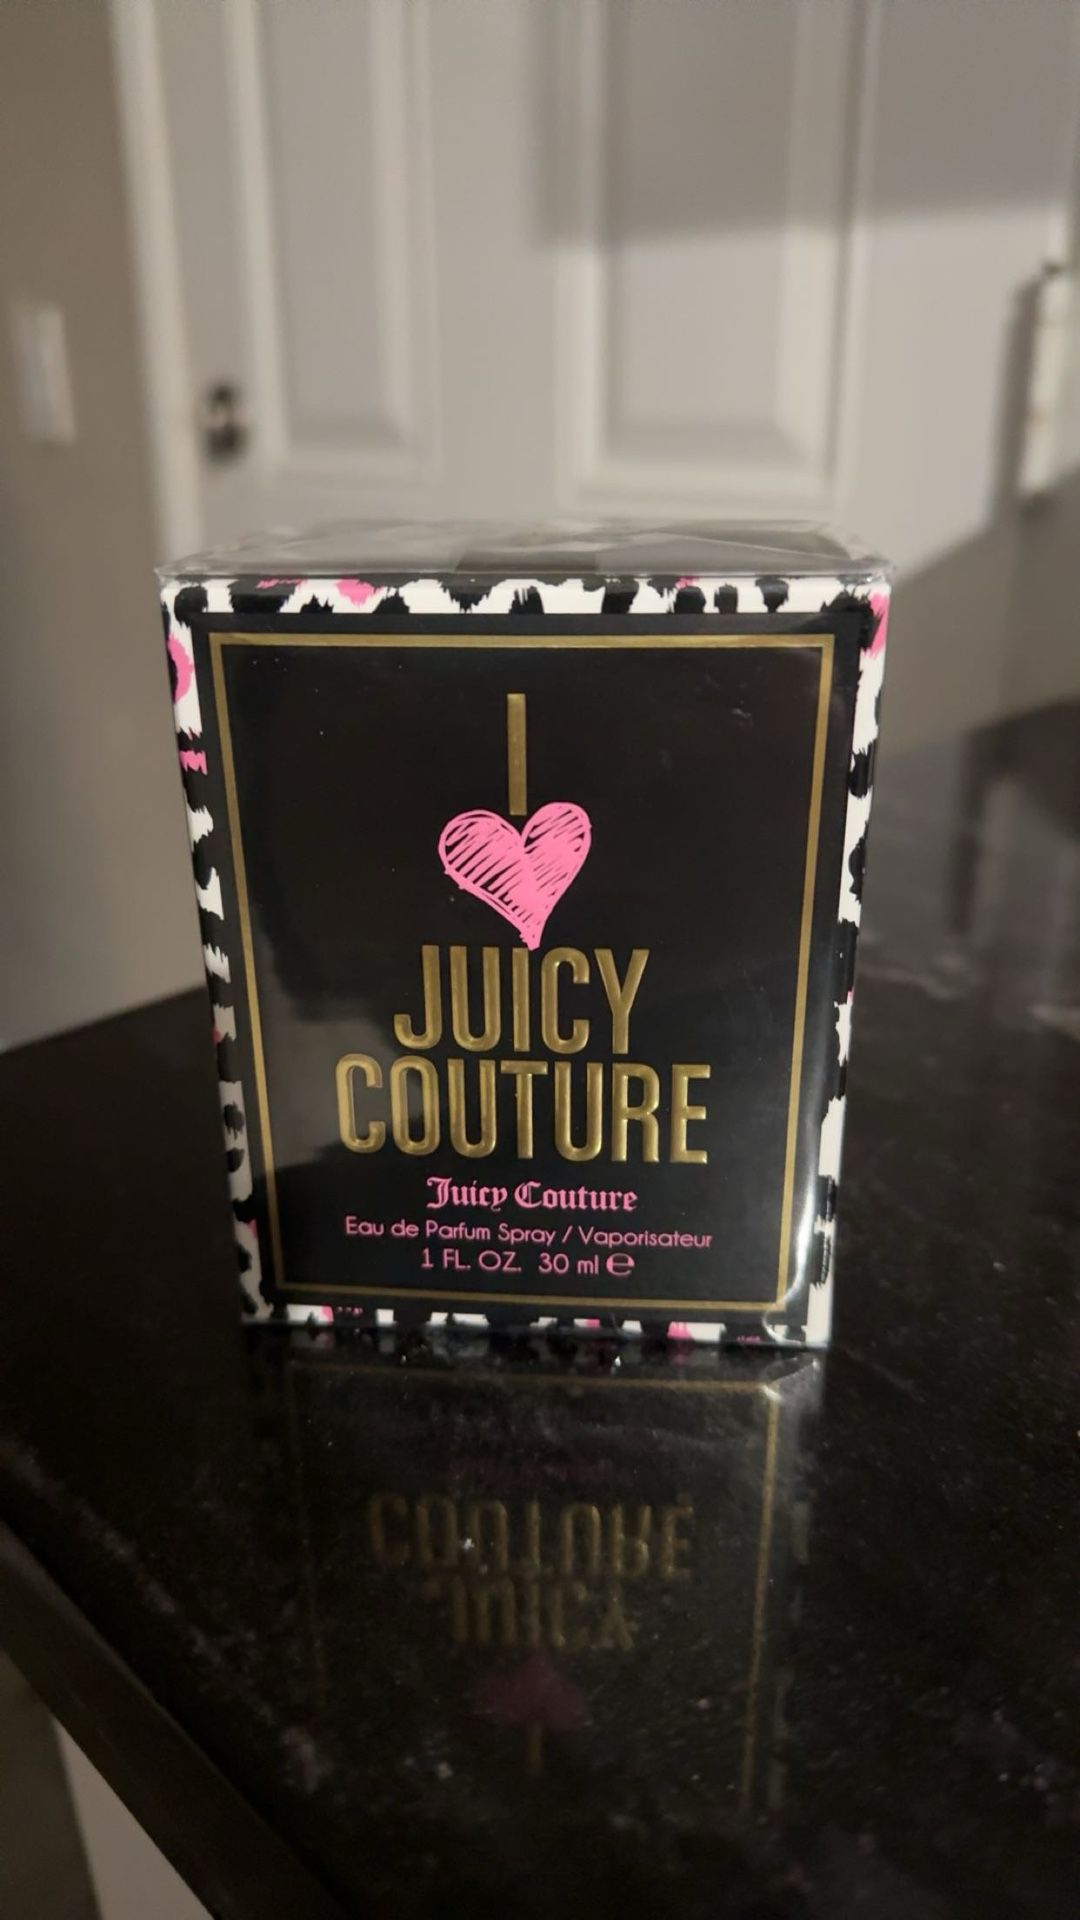 Juicy Perfume 